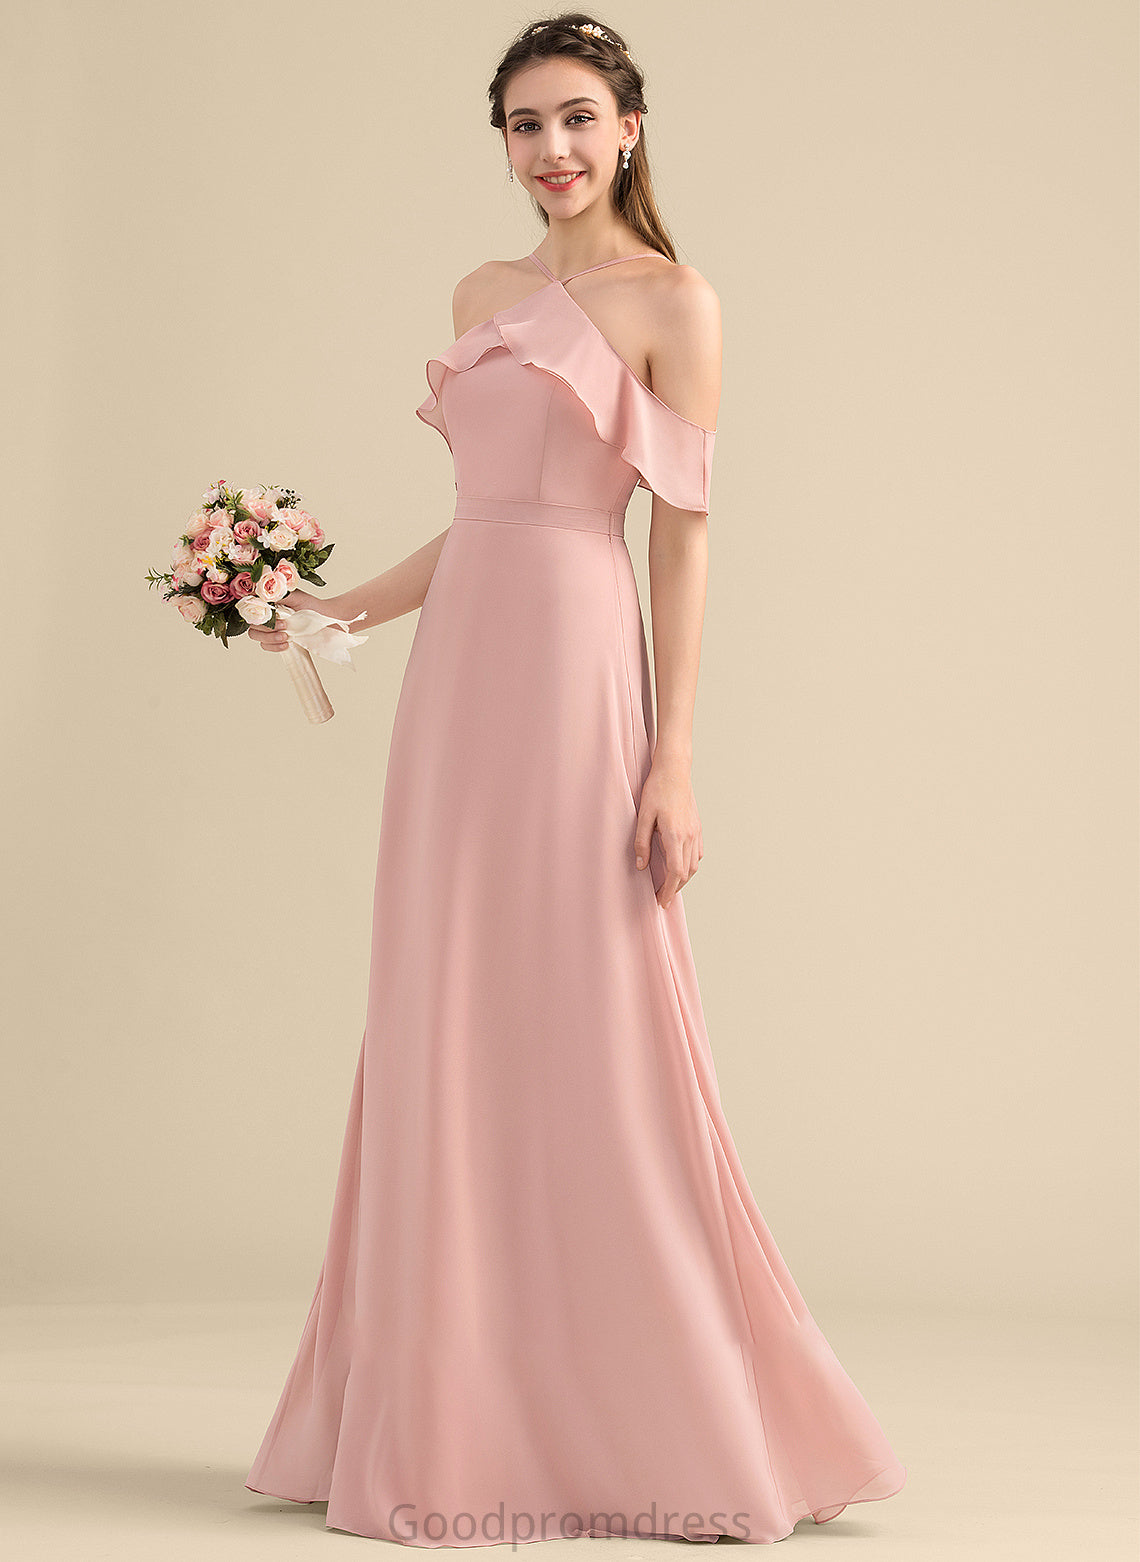 Fabric CascadingRuffles V-neck Embellishment Neckline Floor-Length Bow(s) Length A-Line Silhouette Carina Halter Bridesmaid Dresses